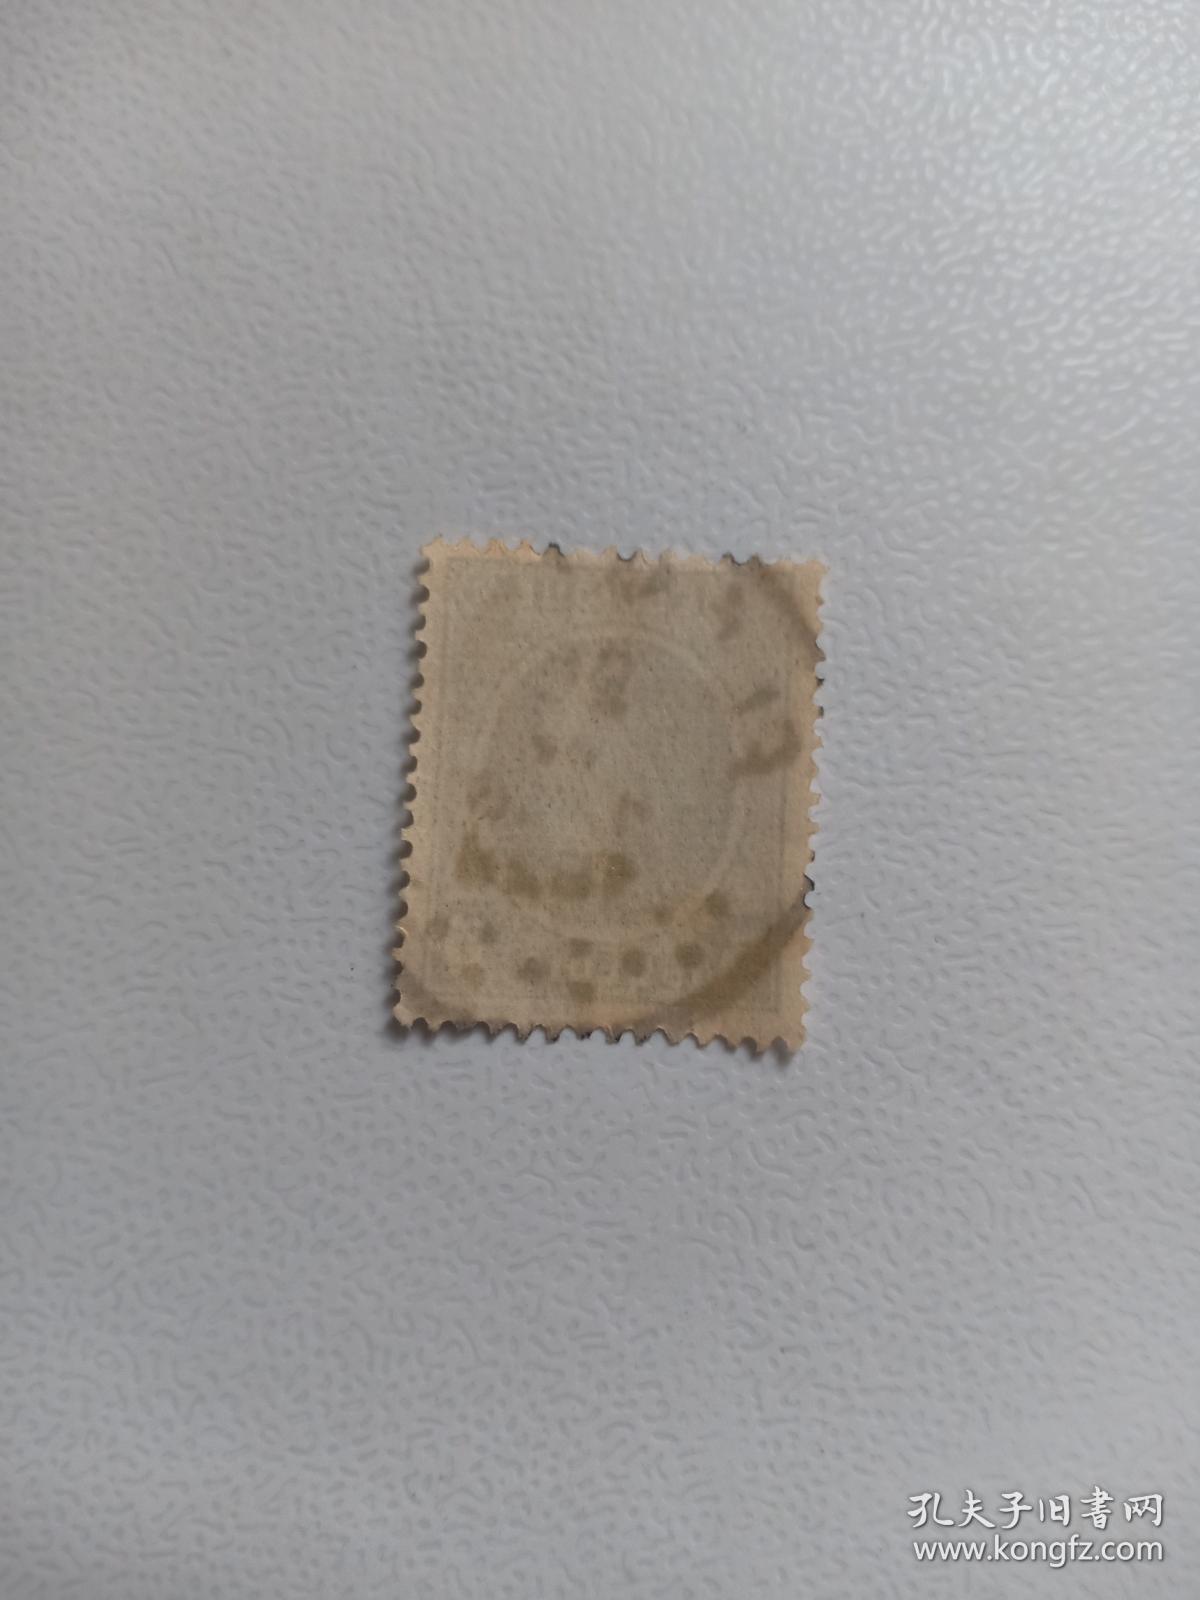 比利时早期邮票 5C 阿尔贝一世国王军装像 盖有1928年戳记  阿尔贝一世国王1909年12月23日-1934年2月17日 比利时国王邮票 比利时邮票